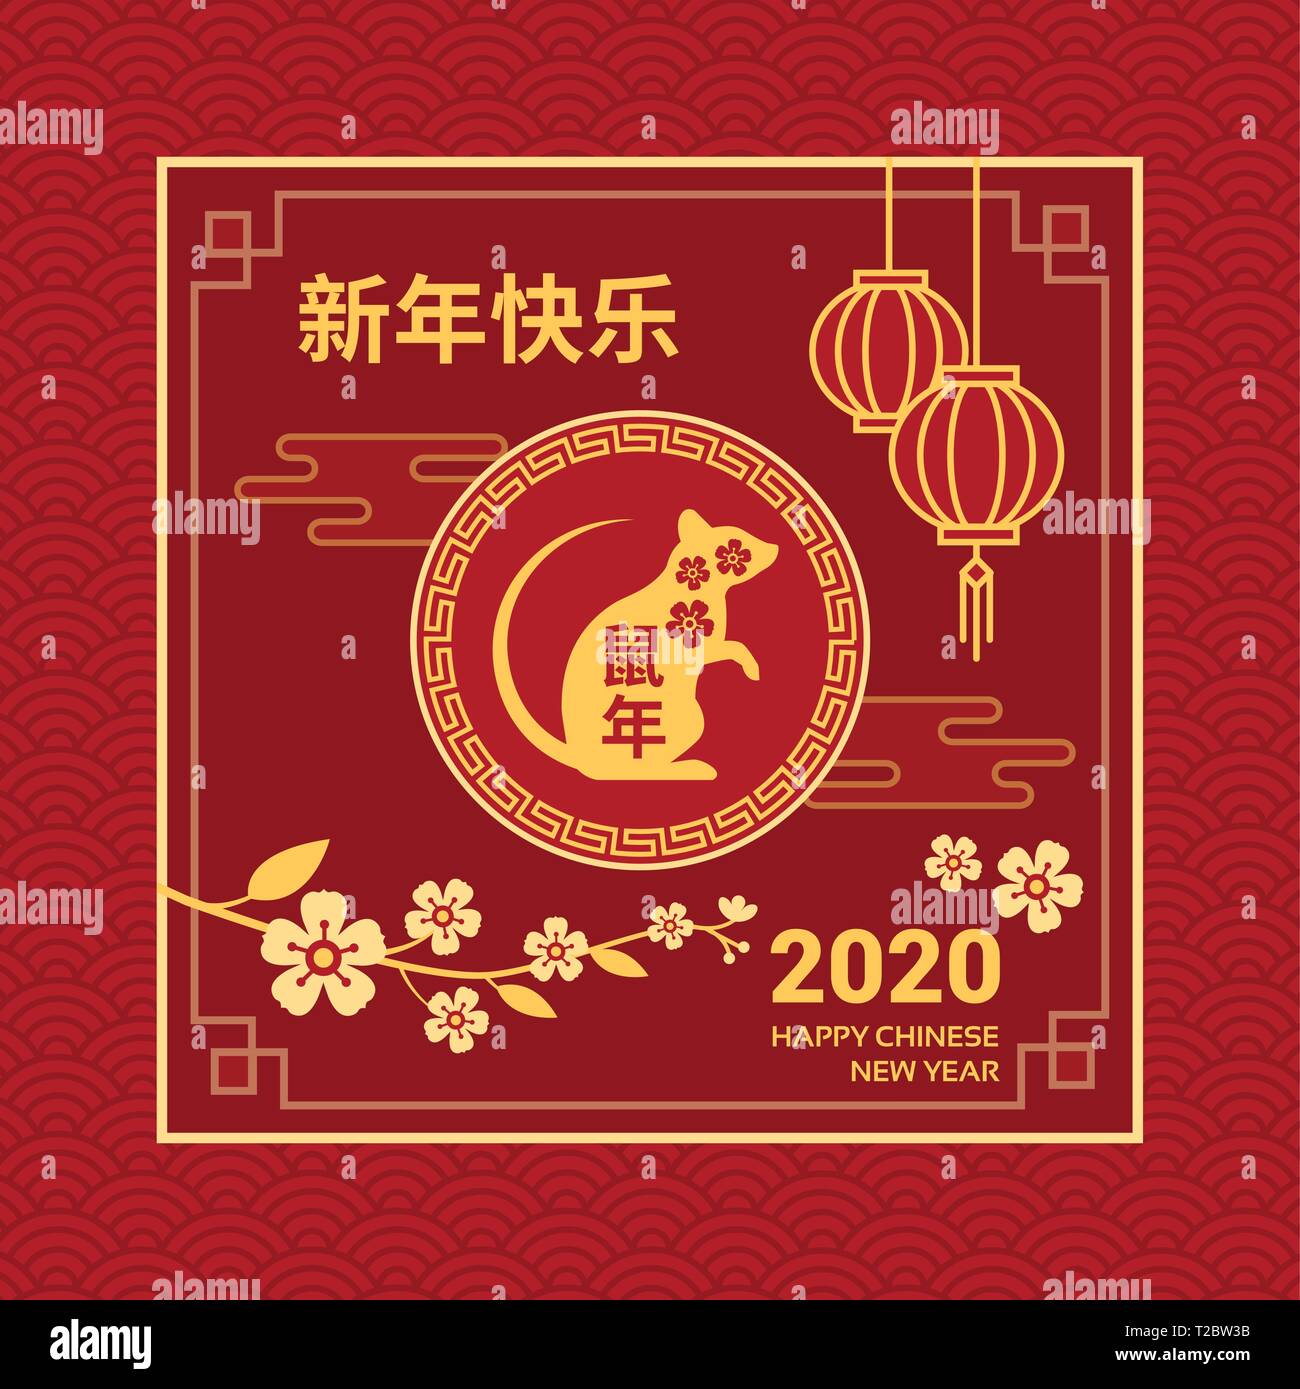 Joyeux Nouvel An chinois carte et médias sociaux post avec rat, oranger fleurs et lampions rouges Illustration de Vecteur